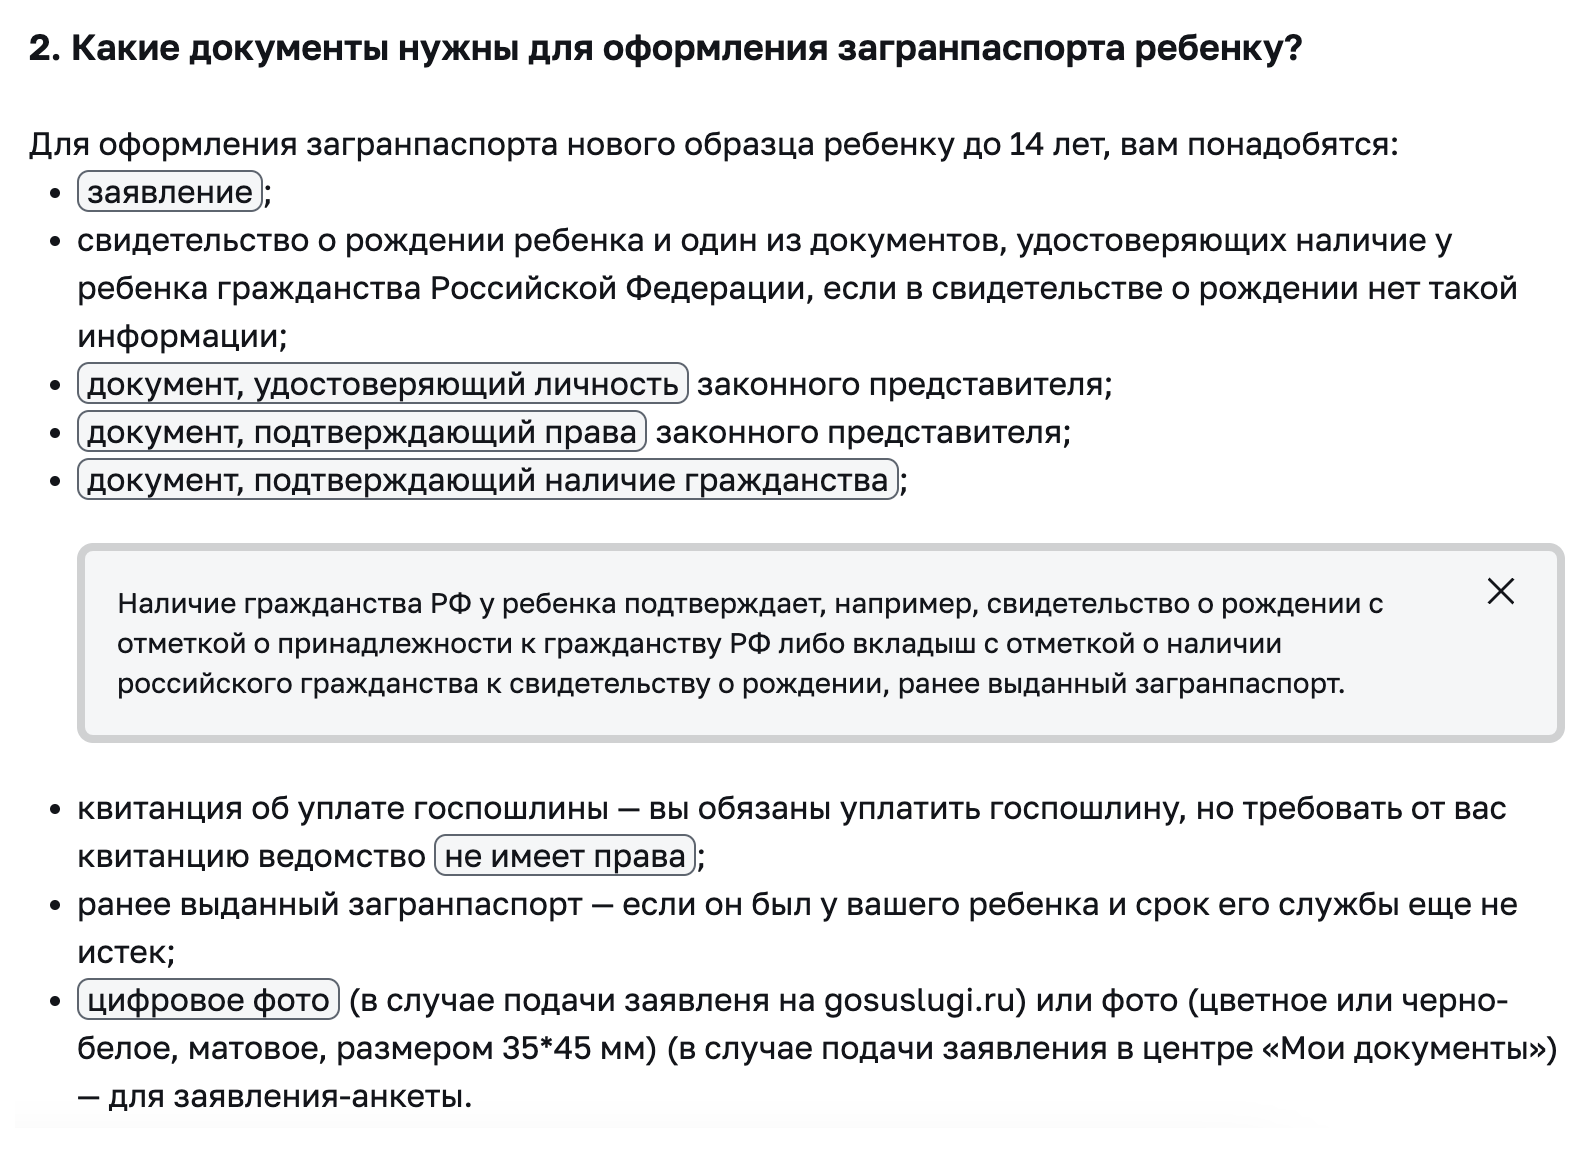 На сайте московской мэрии пишут, что ребенку нужны документы, подтверждающие гражданство